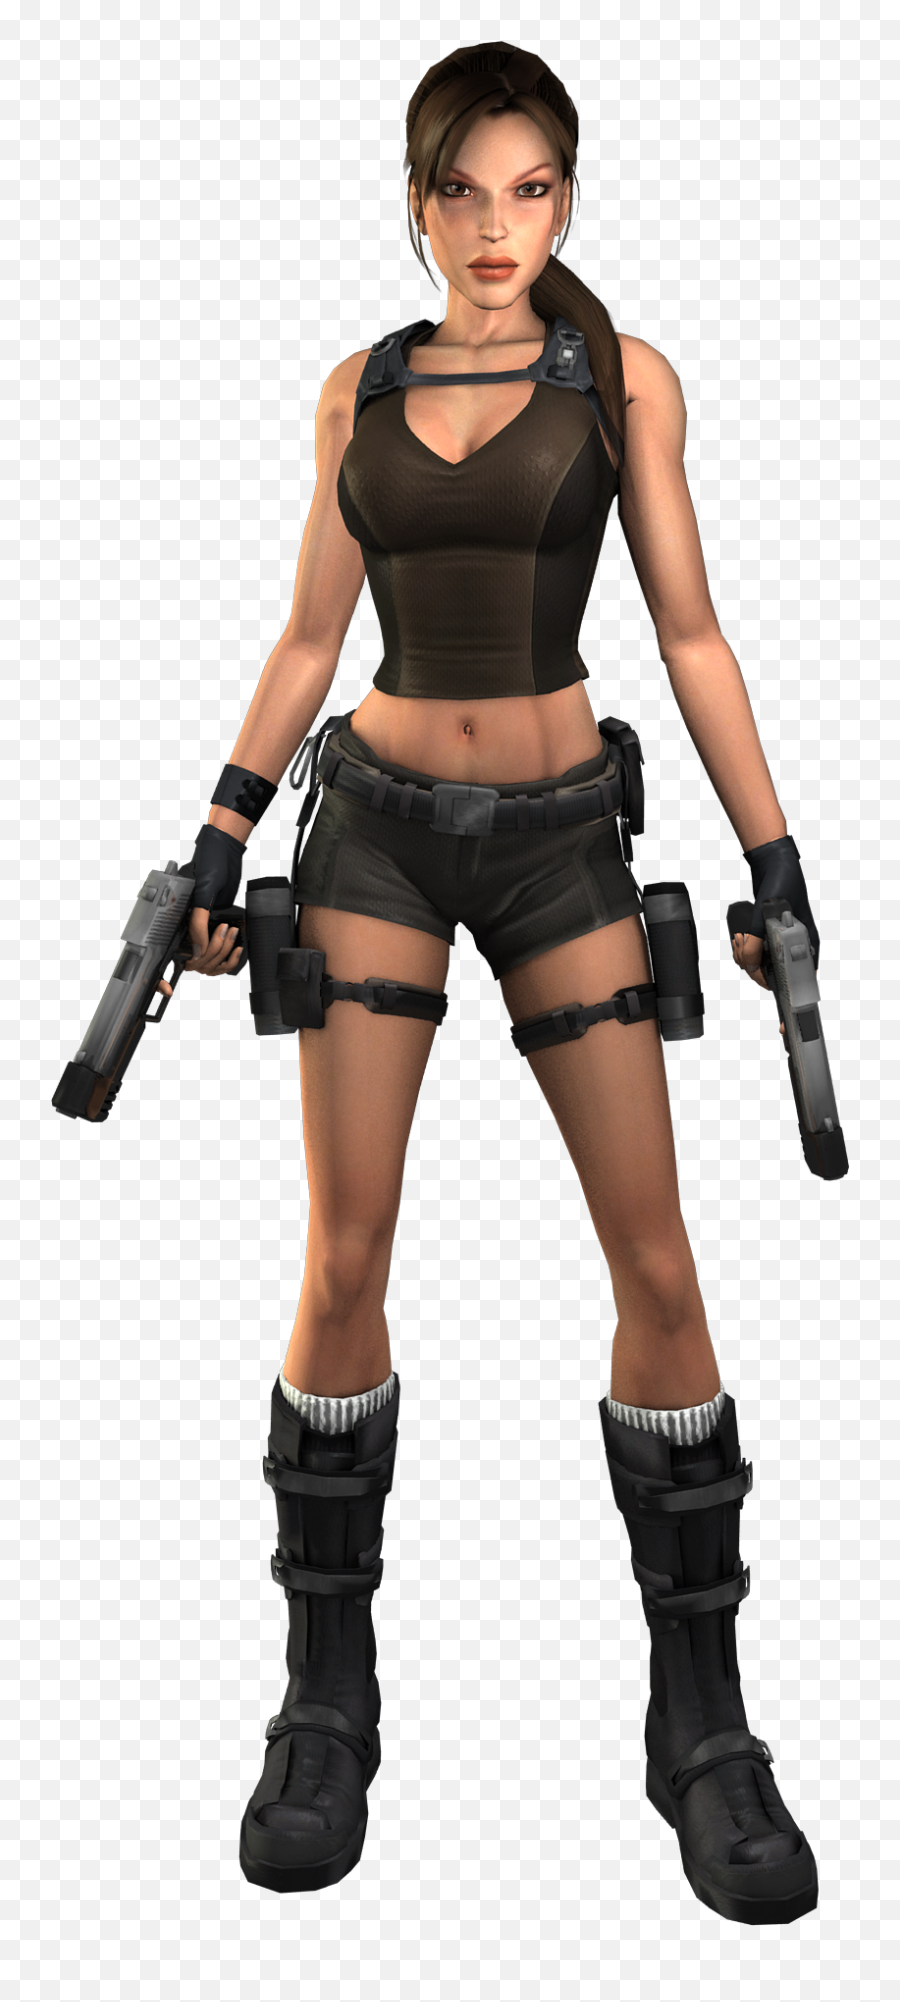 Lara Croft Png File Transparent